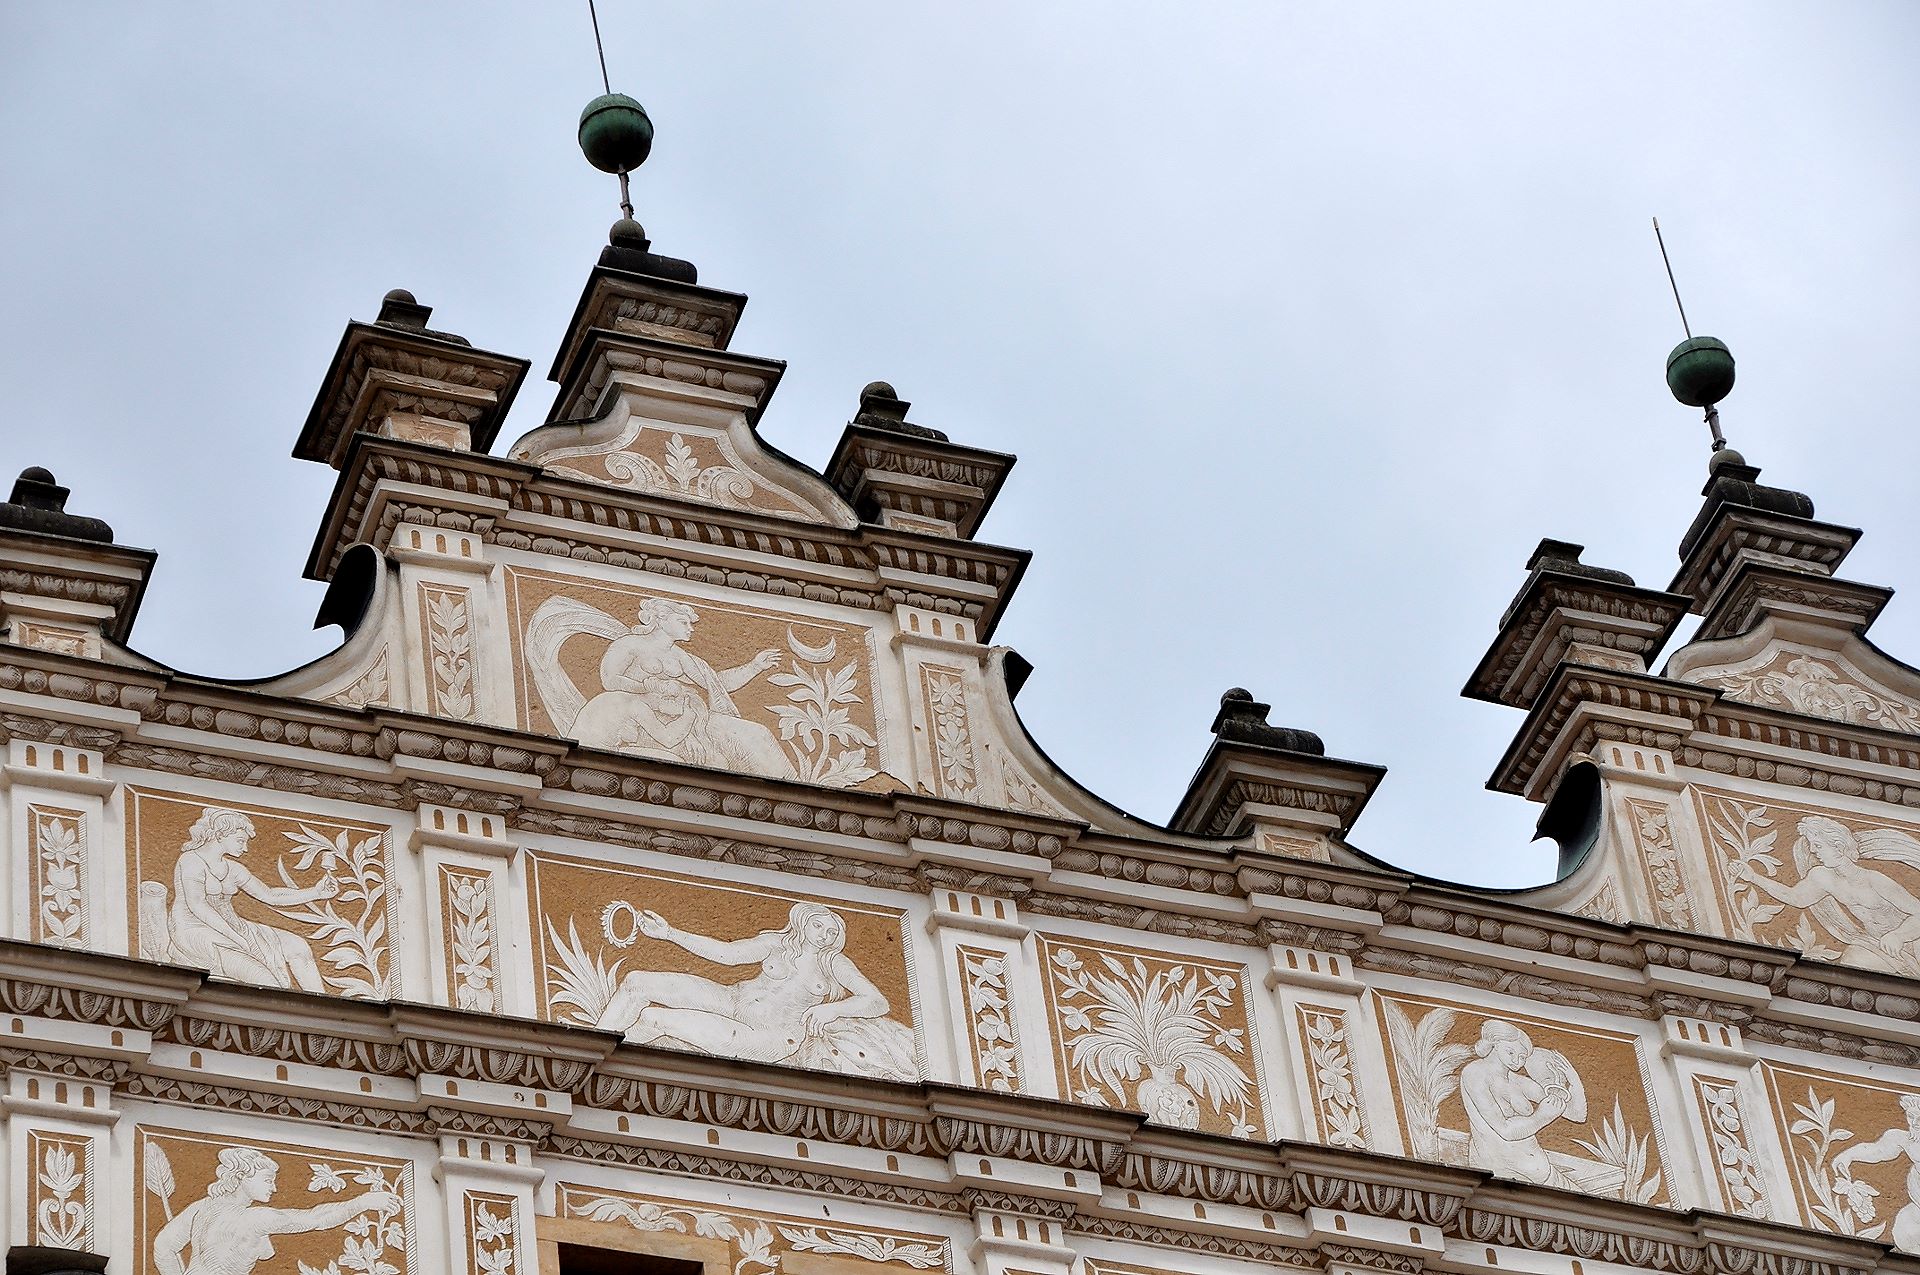 Unglaublich vielfältiger Sgraffitodekor an der Schlossfassade